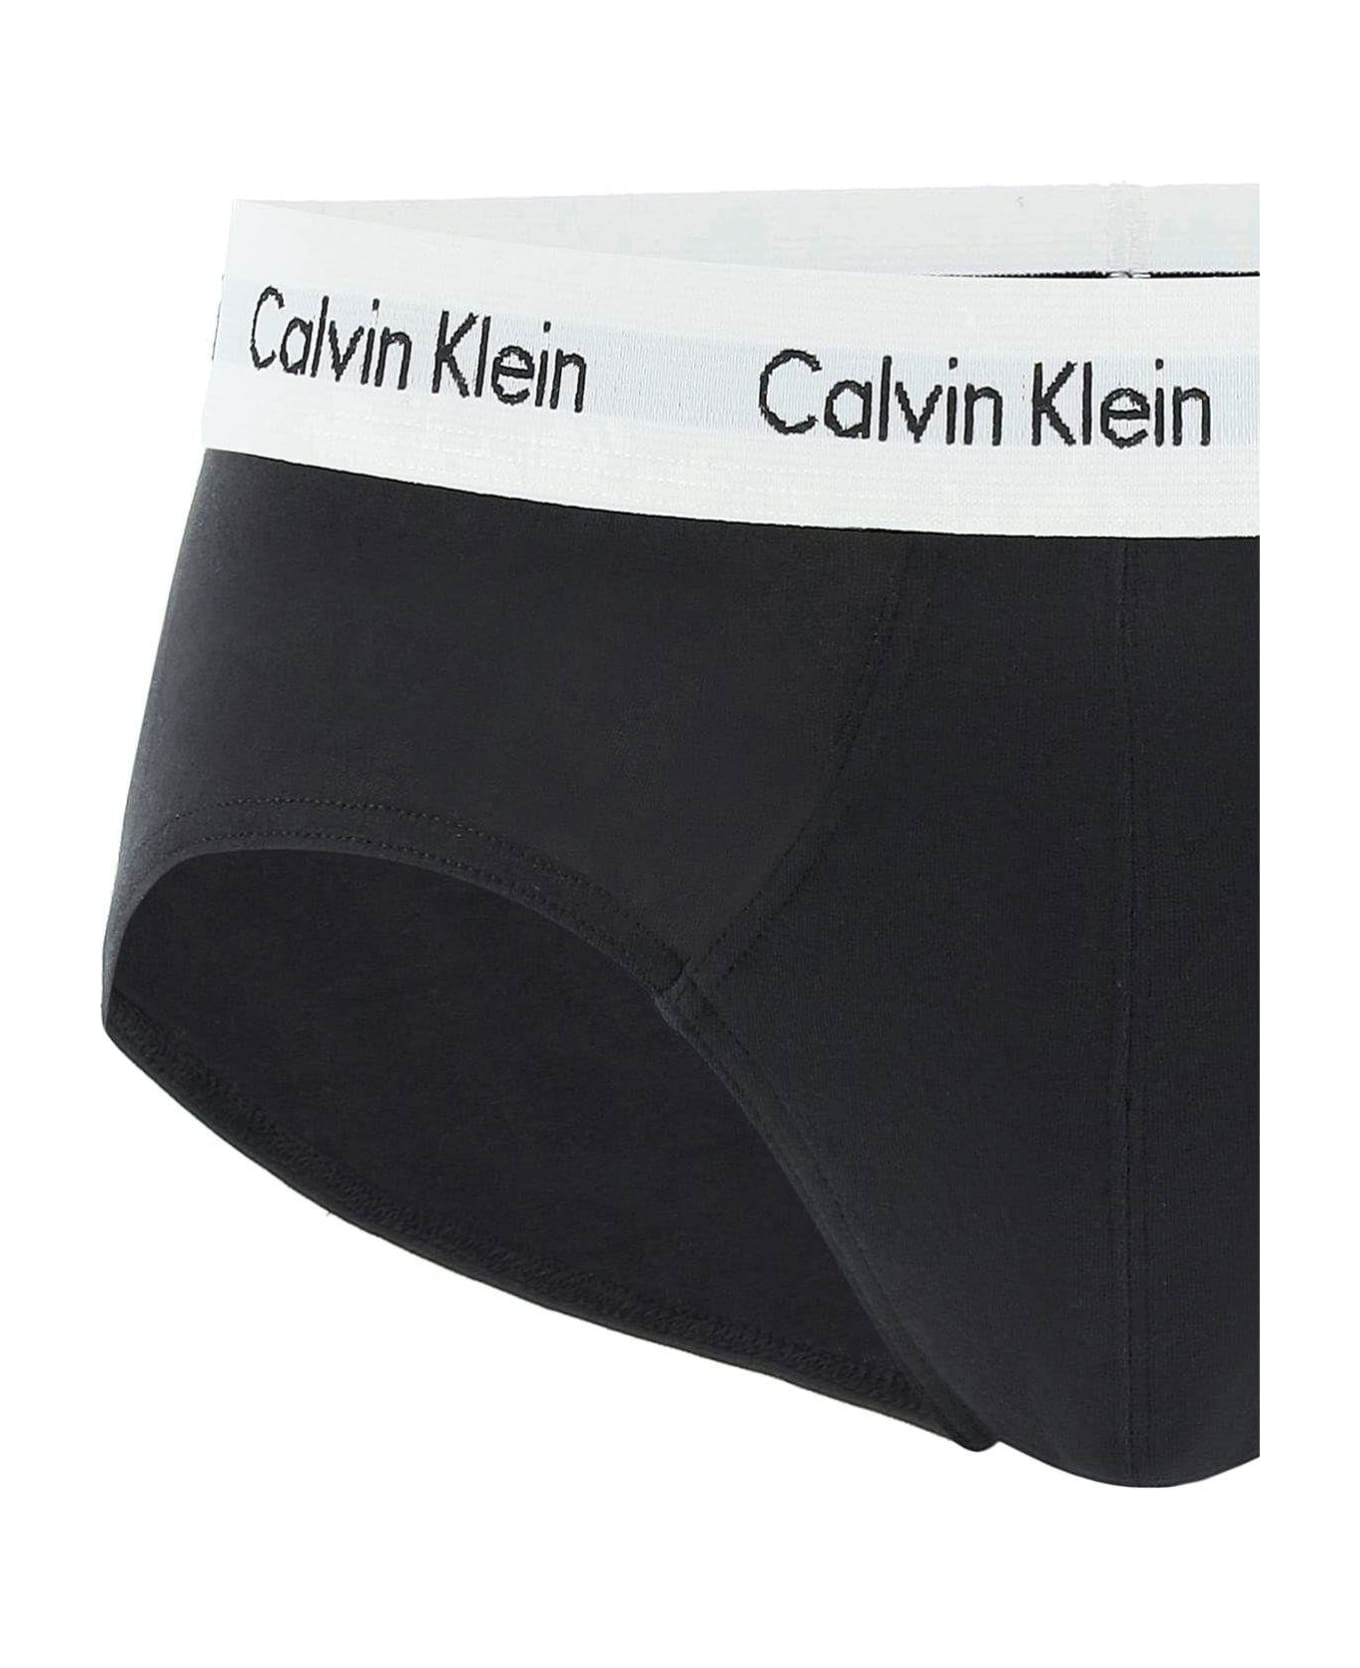 Calvin Klein Tri-pack Underwear Briefs Calvin Klein